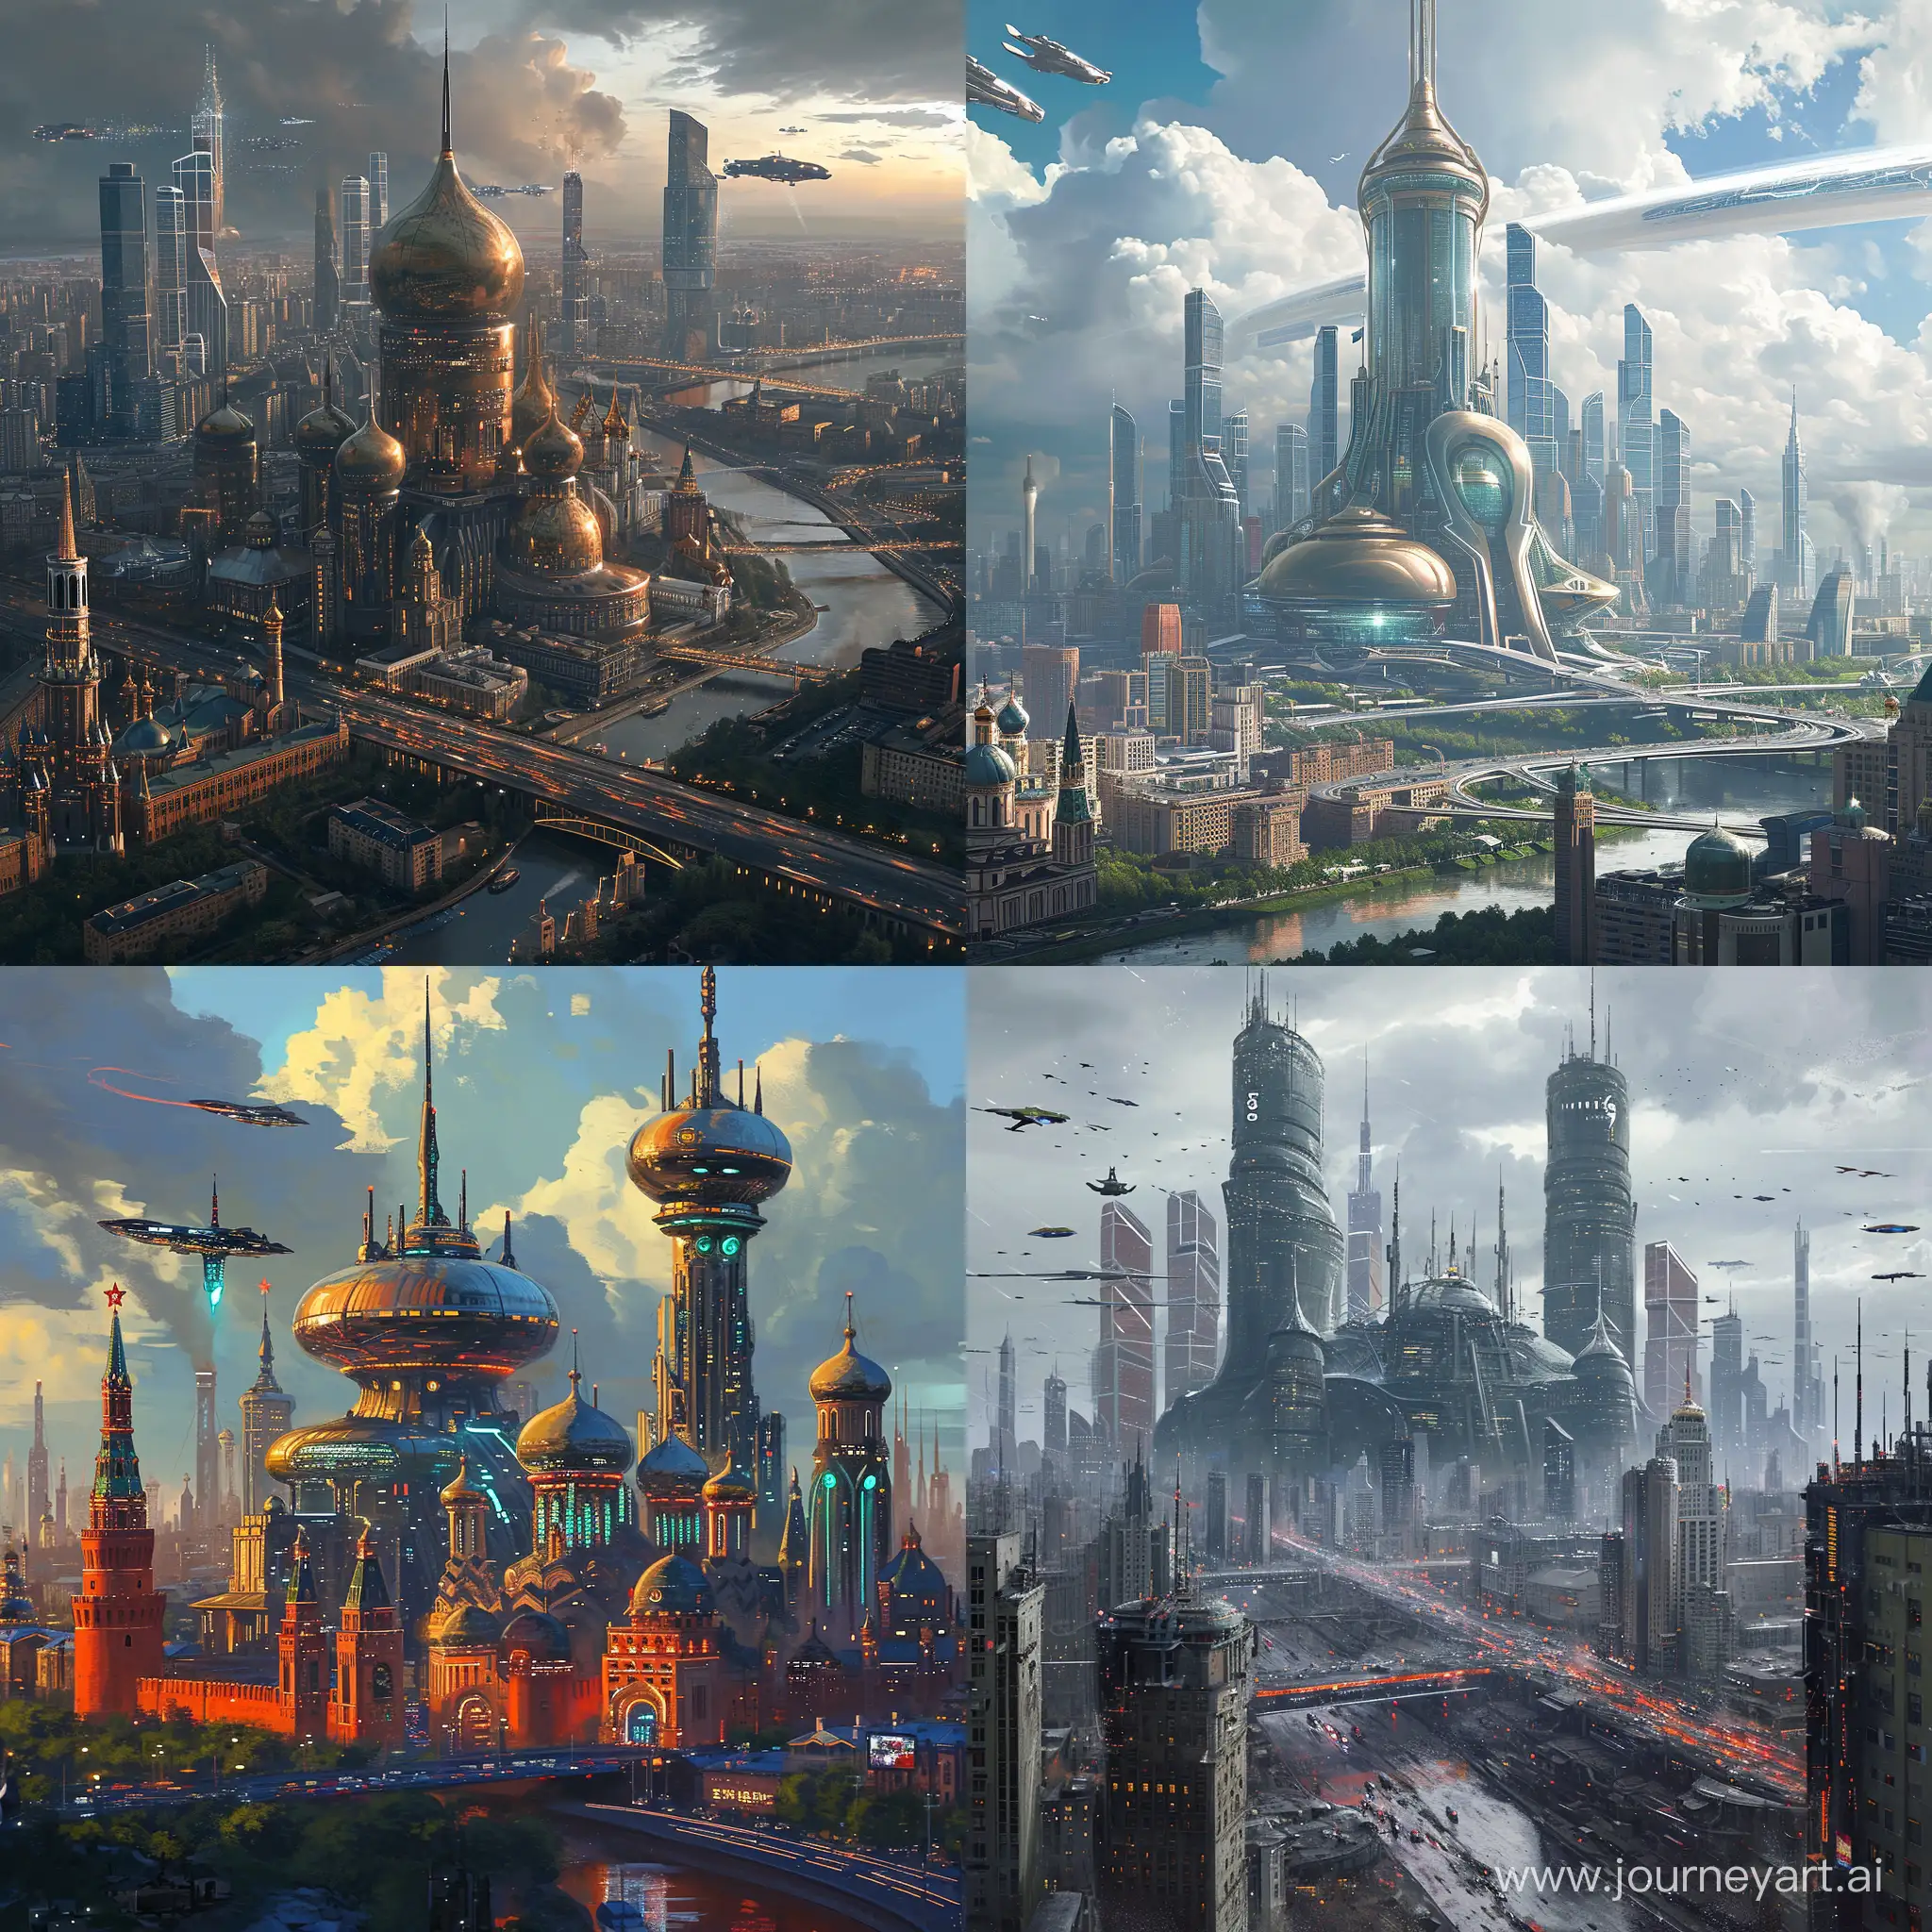 Futuristic-Moscow-Dystopia-in-Utopian-Style-SciFi-Digital-Art